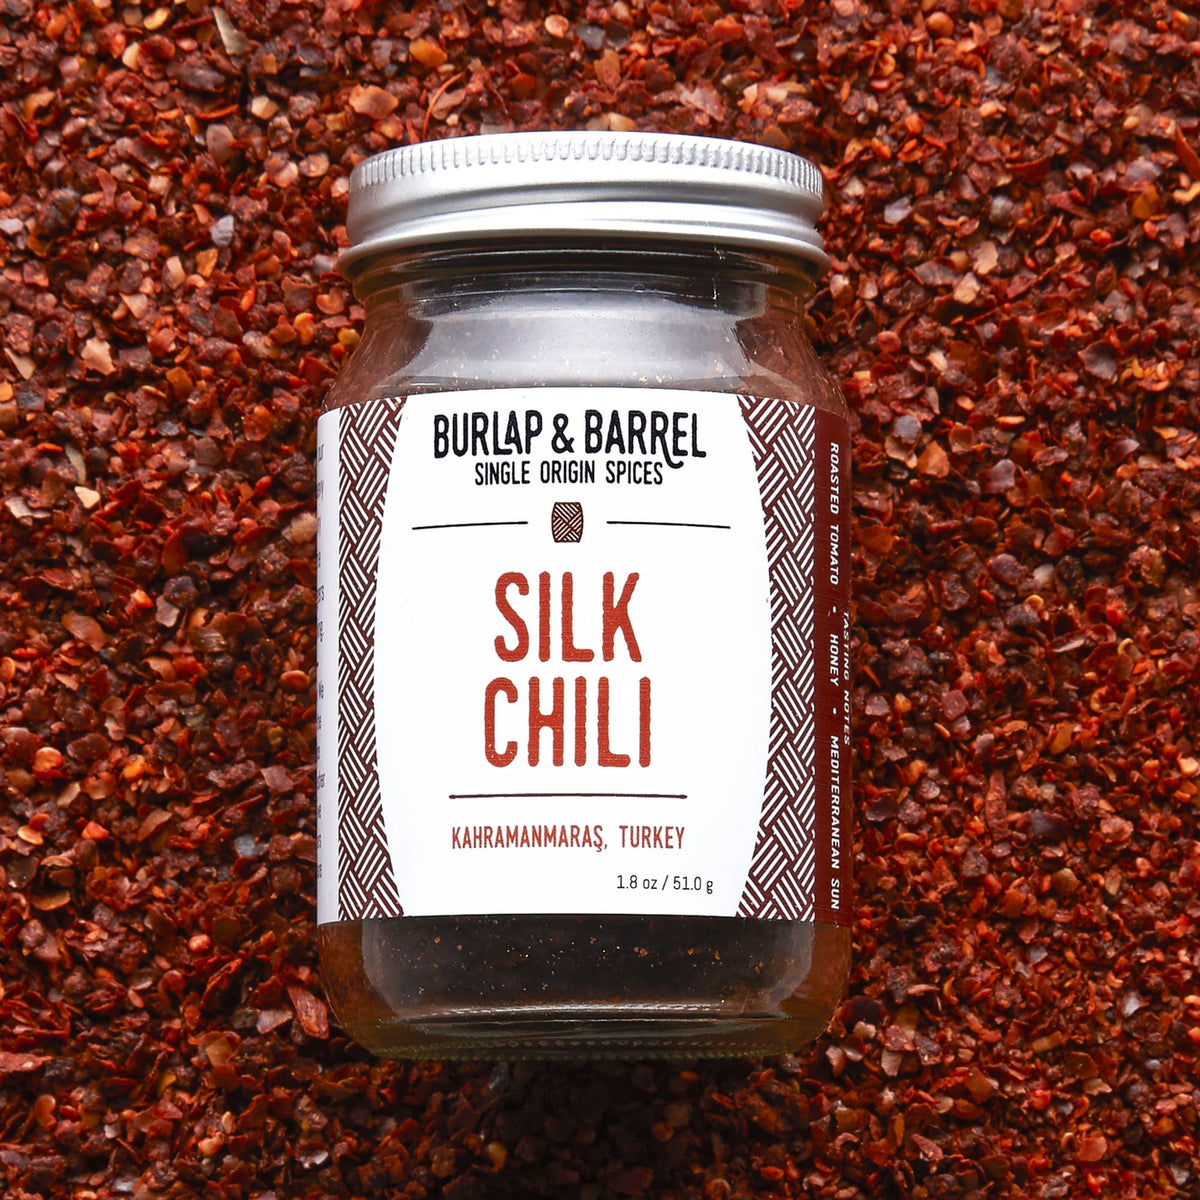 Silk Chili - Burlap & Barrel Single Origin Spices